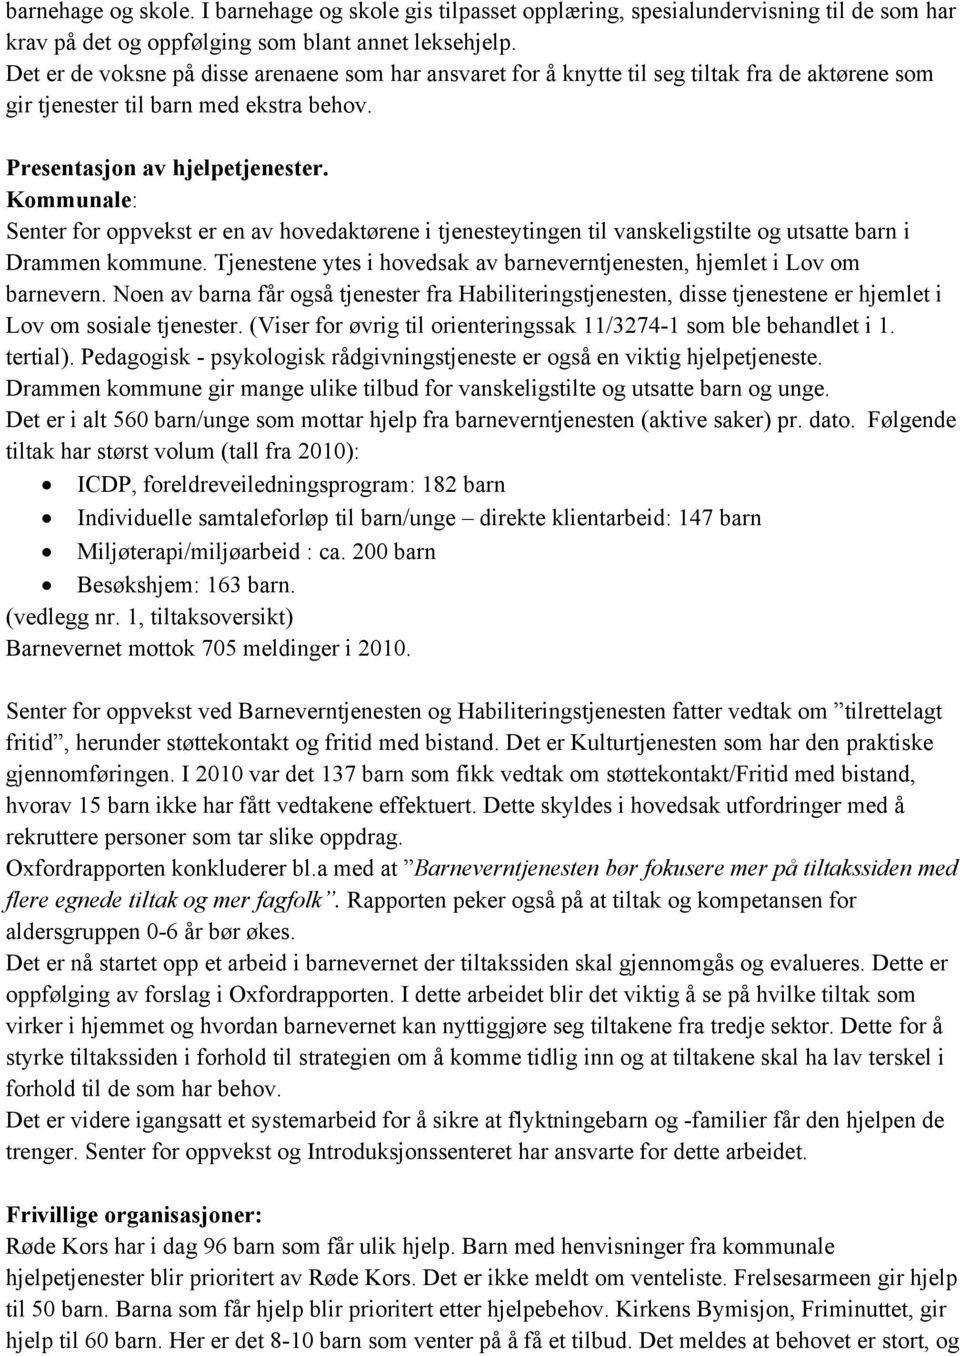 Kommunale: Senter for oppvekst er en av hovedaktørene i tjenesteytingen til vanskeligstilte og utsatte barn i Drammen kommune.